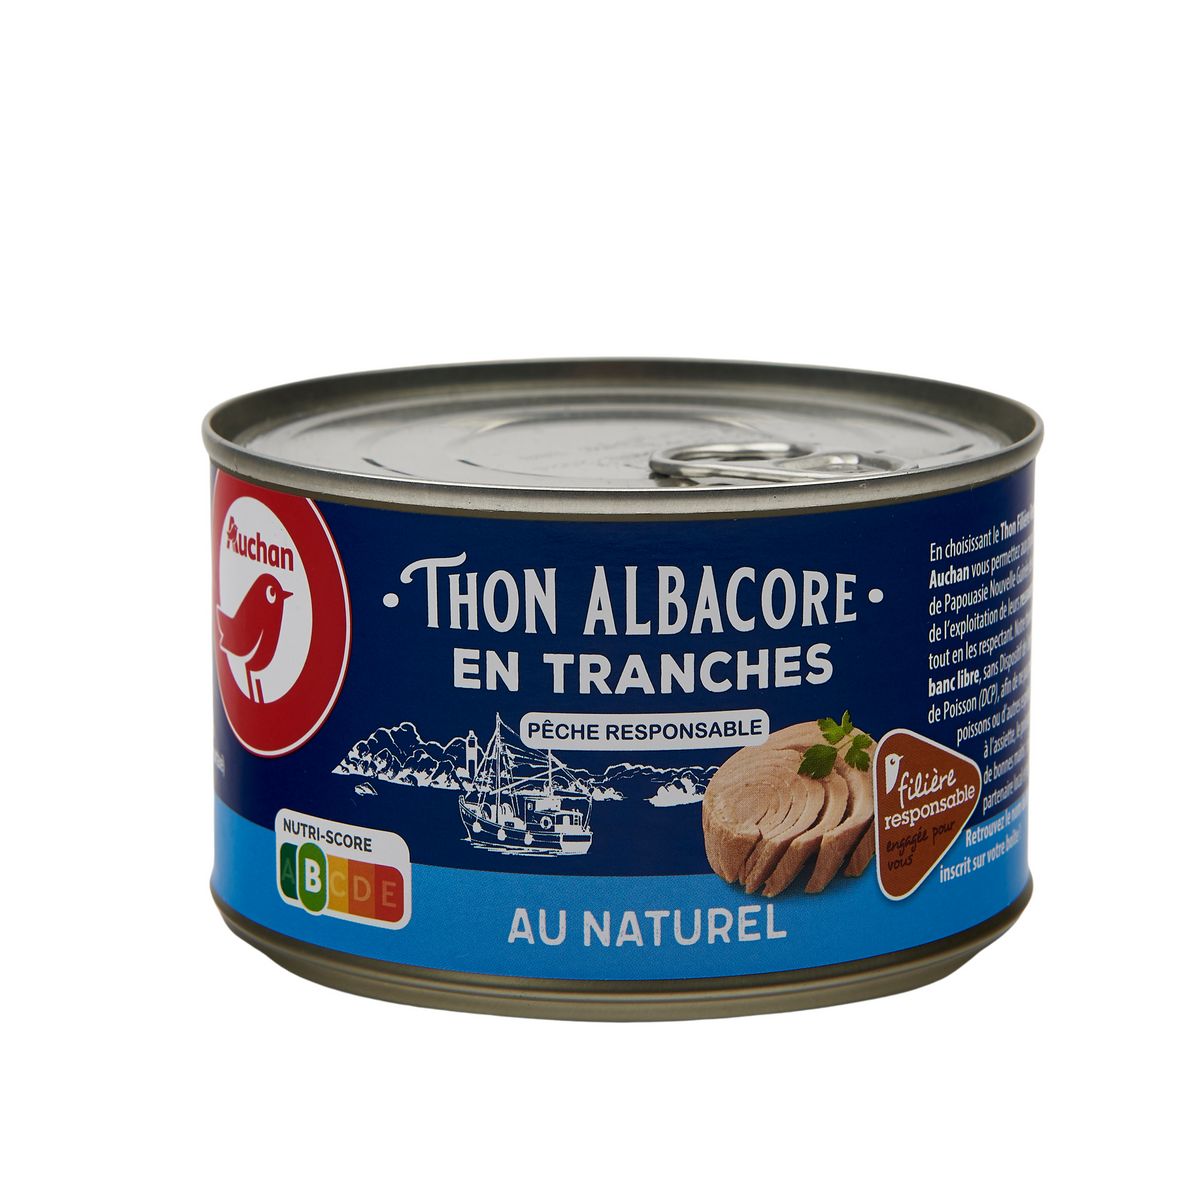 AUCHAN CULTIVONS LE BON thon albacore en tranches au naturel 280g